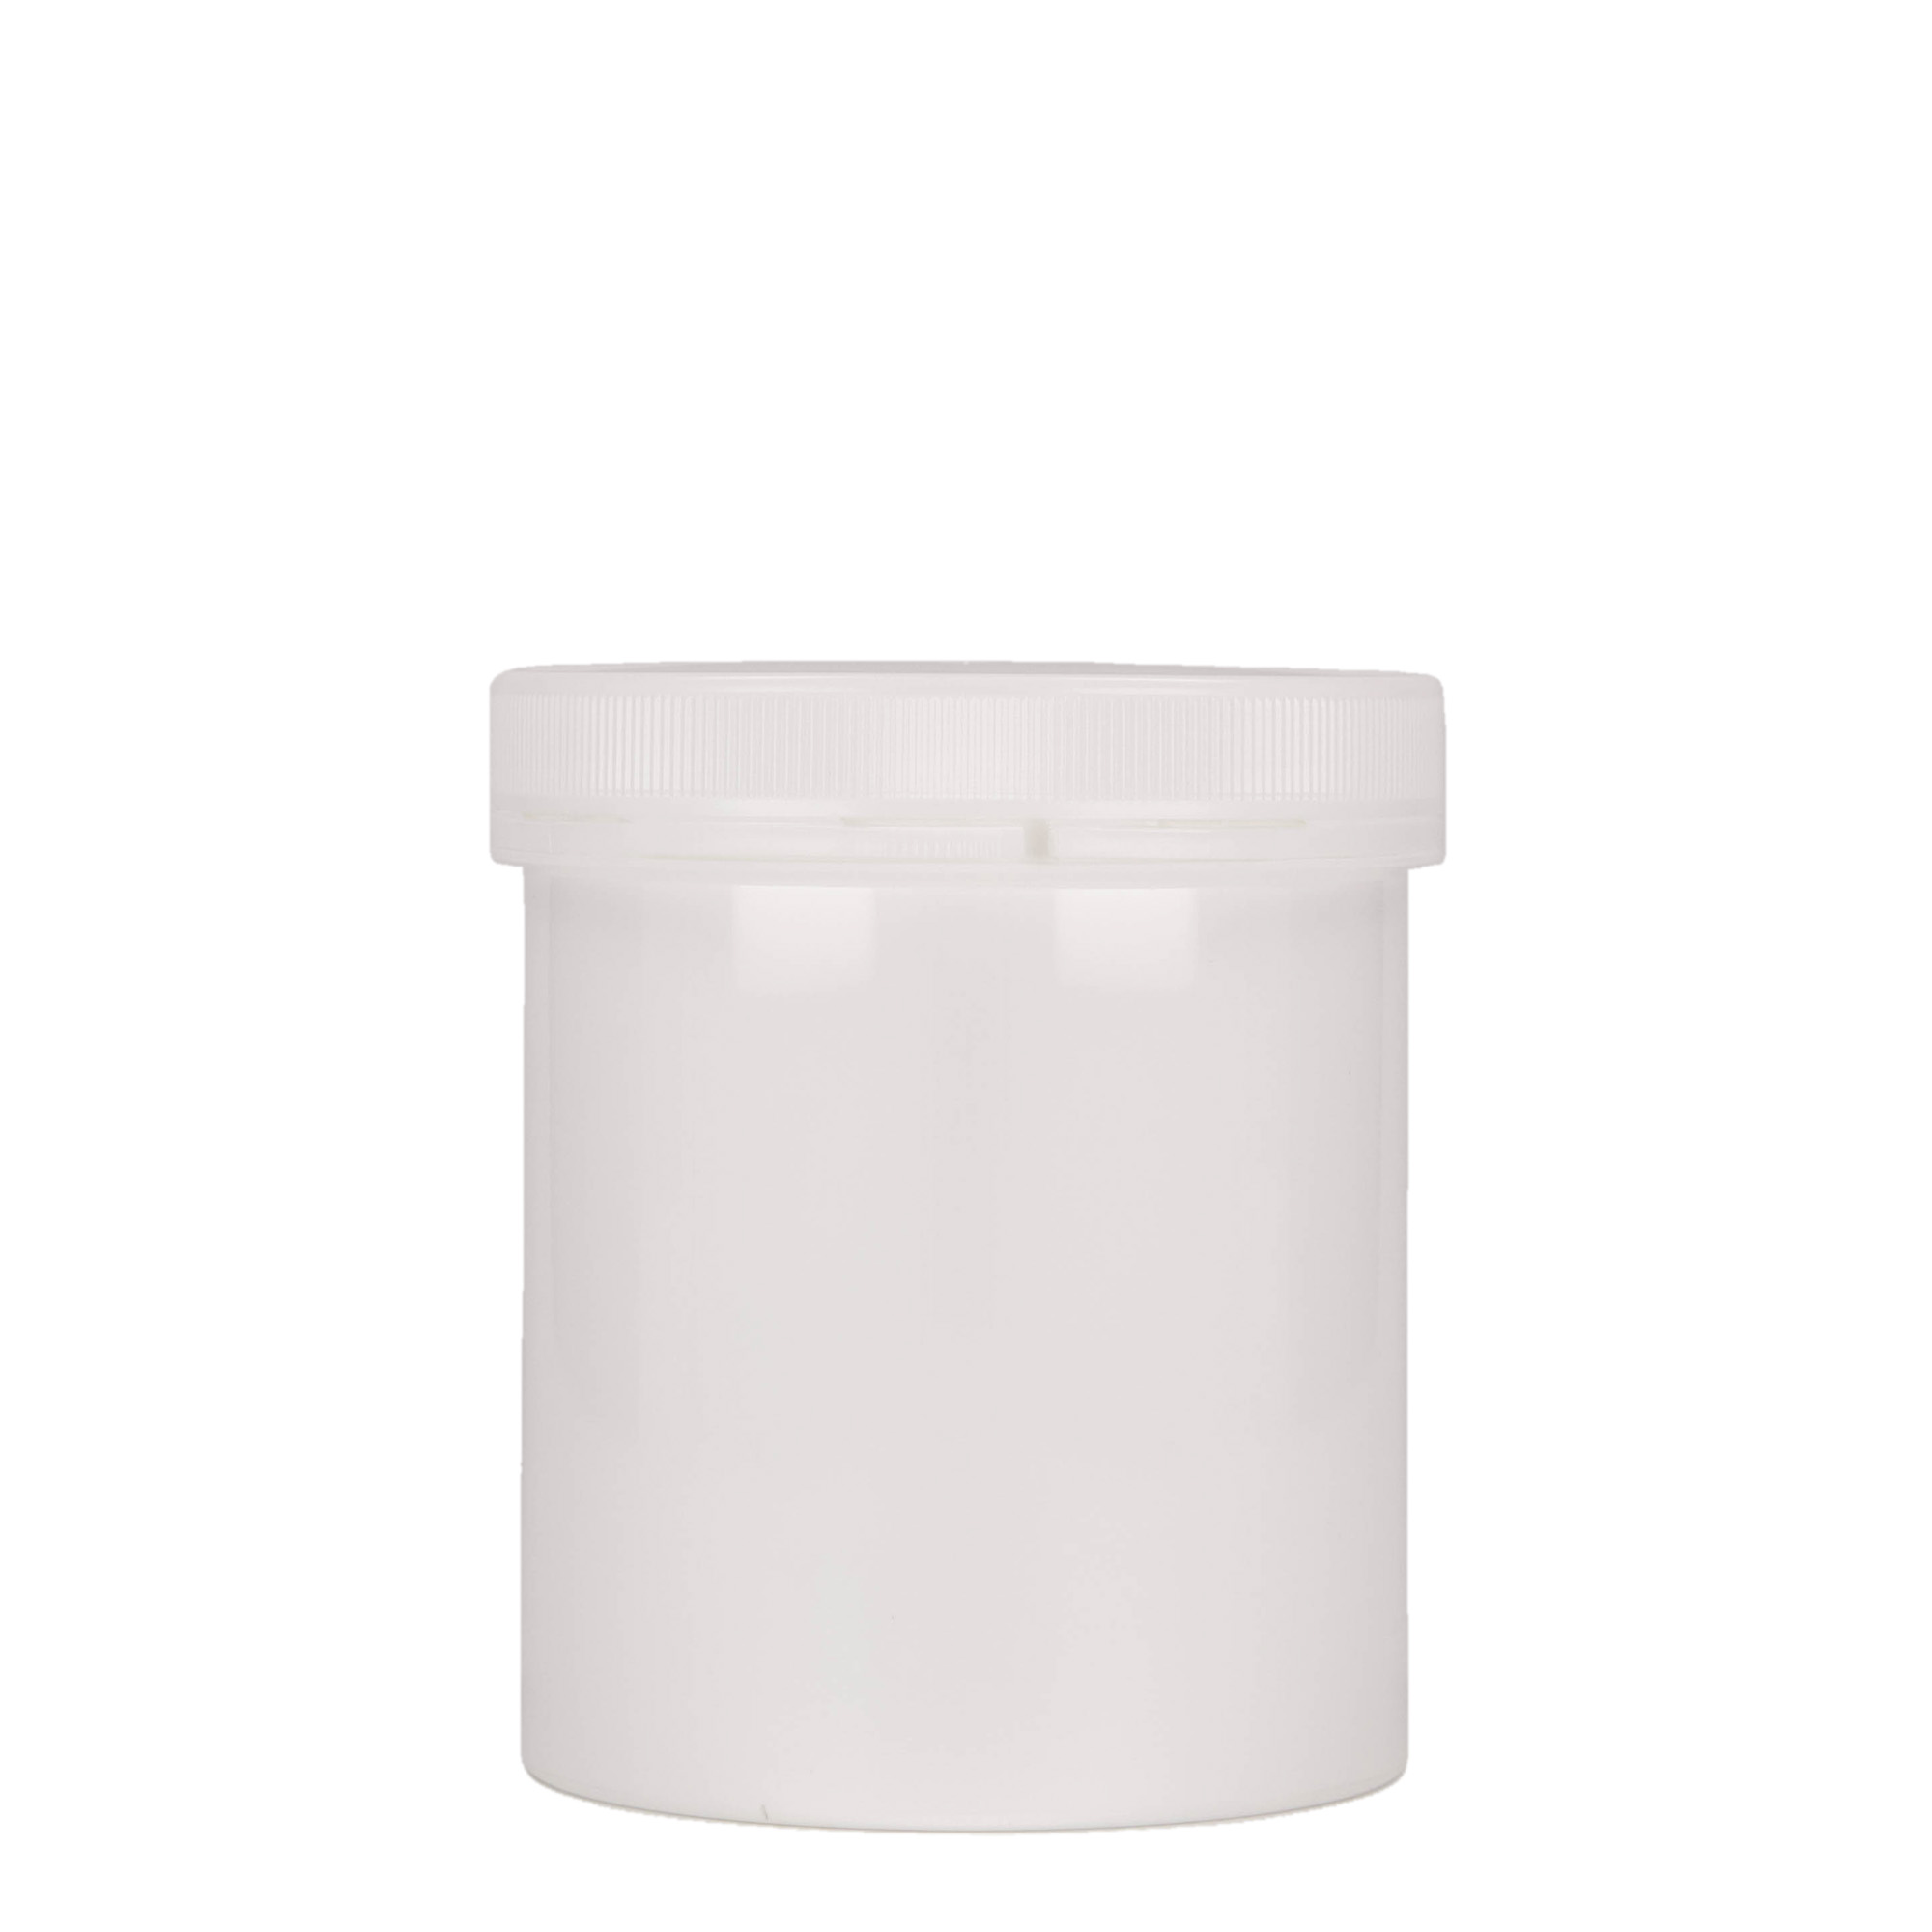 500 ml plastic jar 'Securilock', PP, white, closure: screw cap